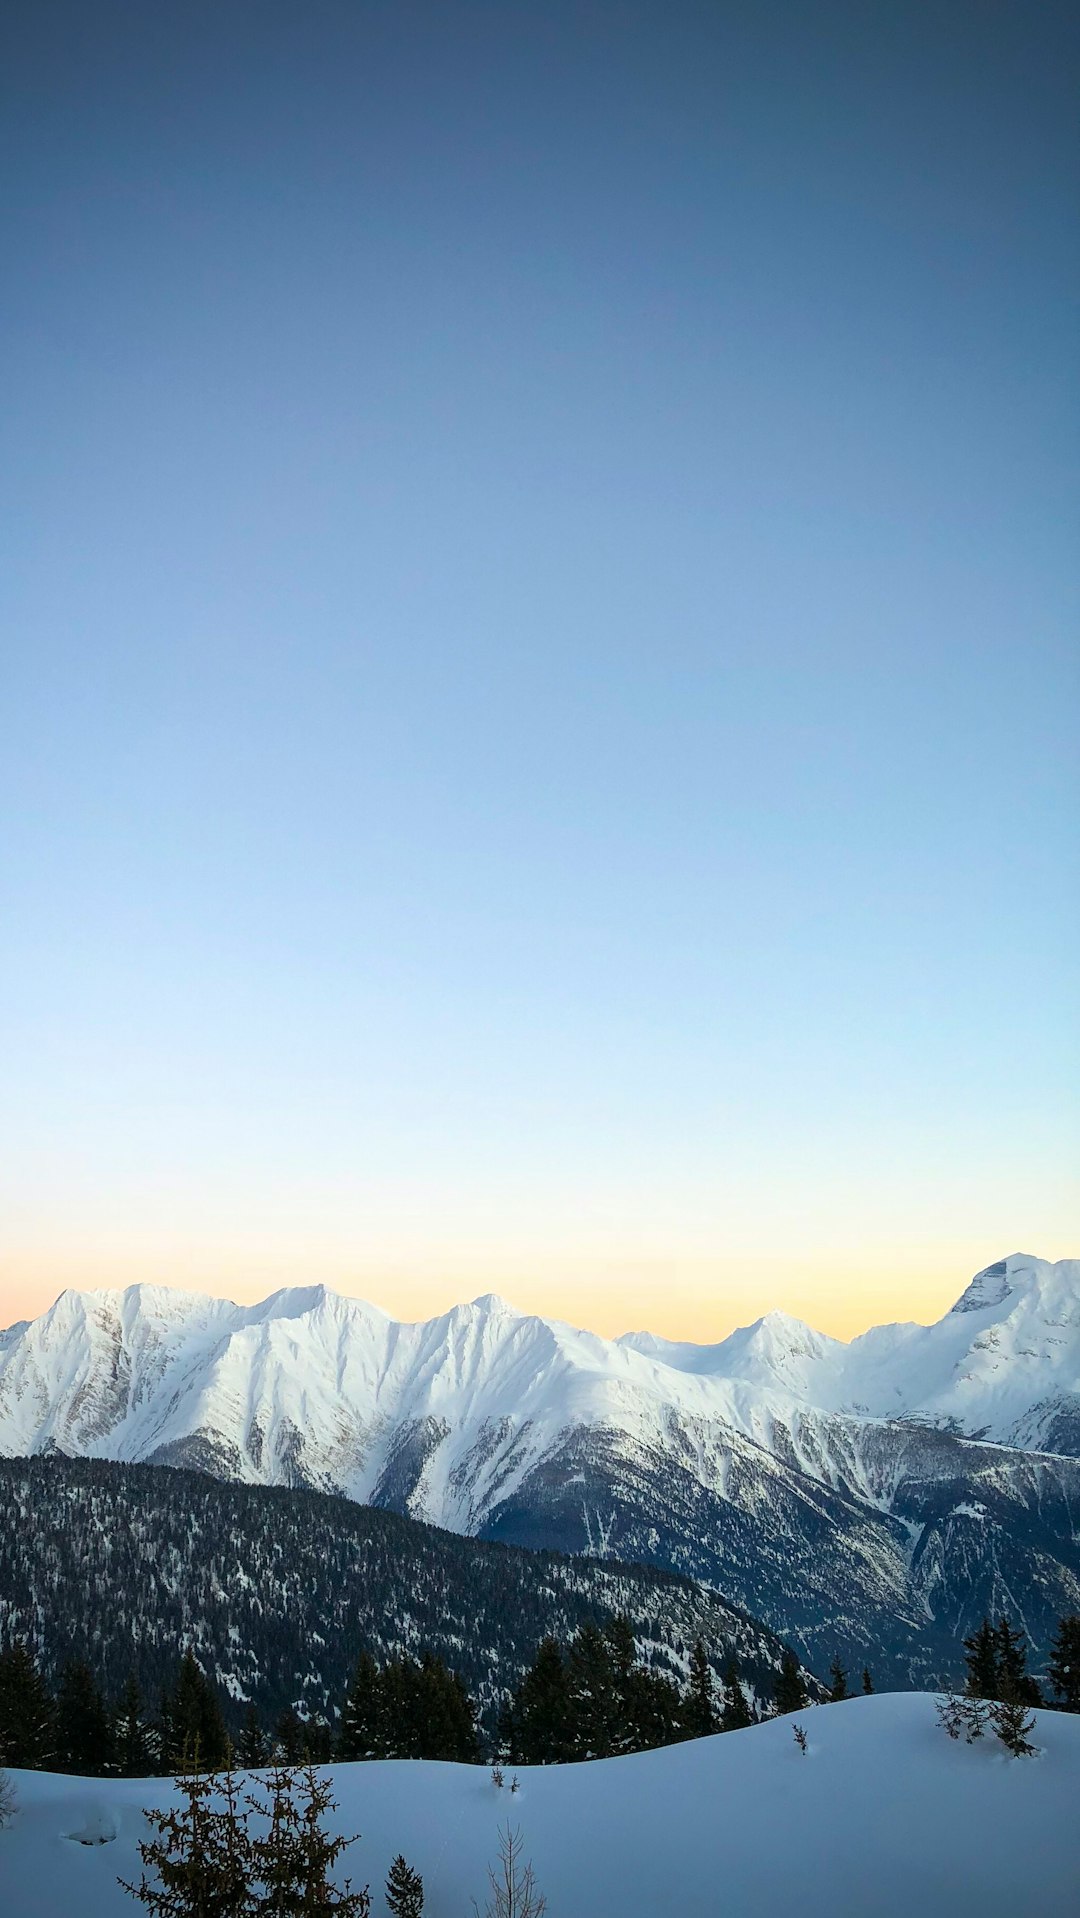 Mountain range photo spot Belalp Jungfraujoch